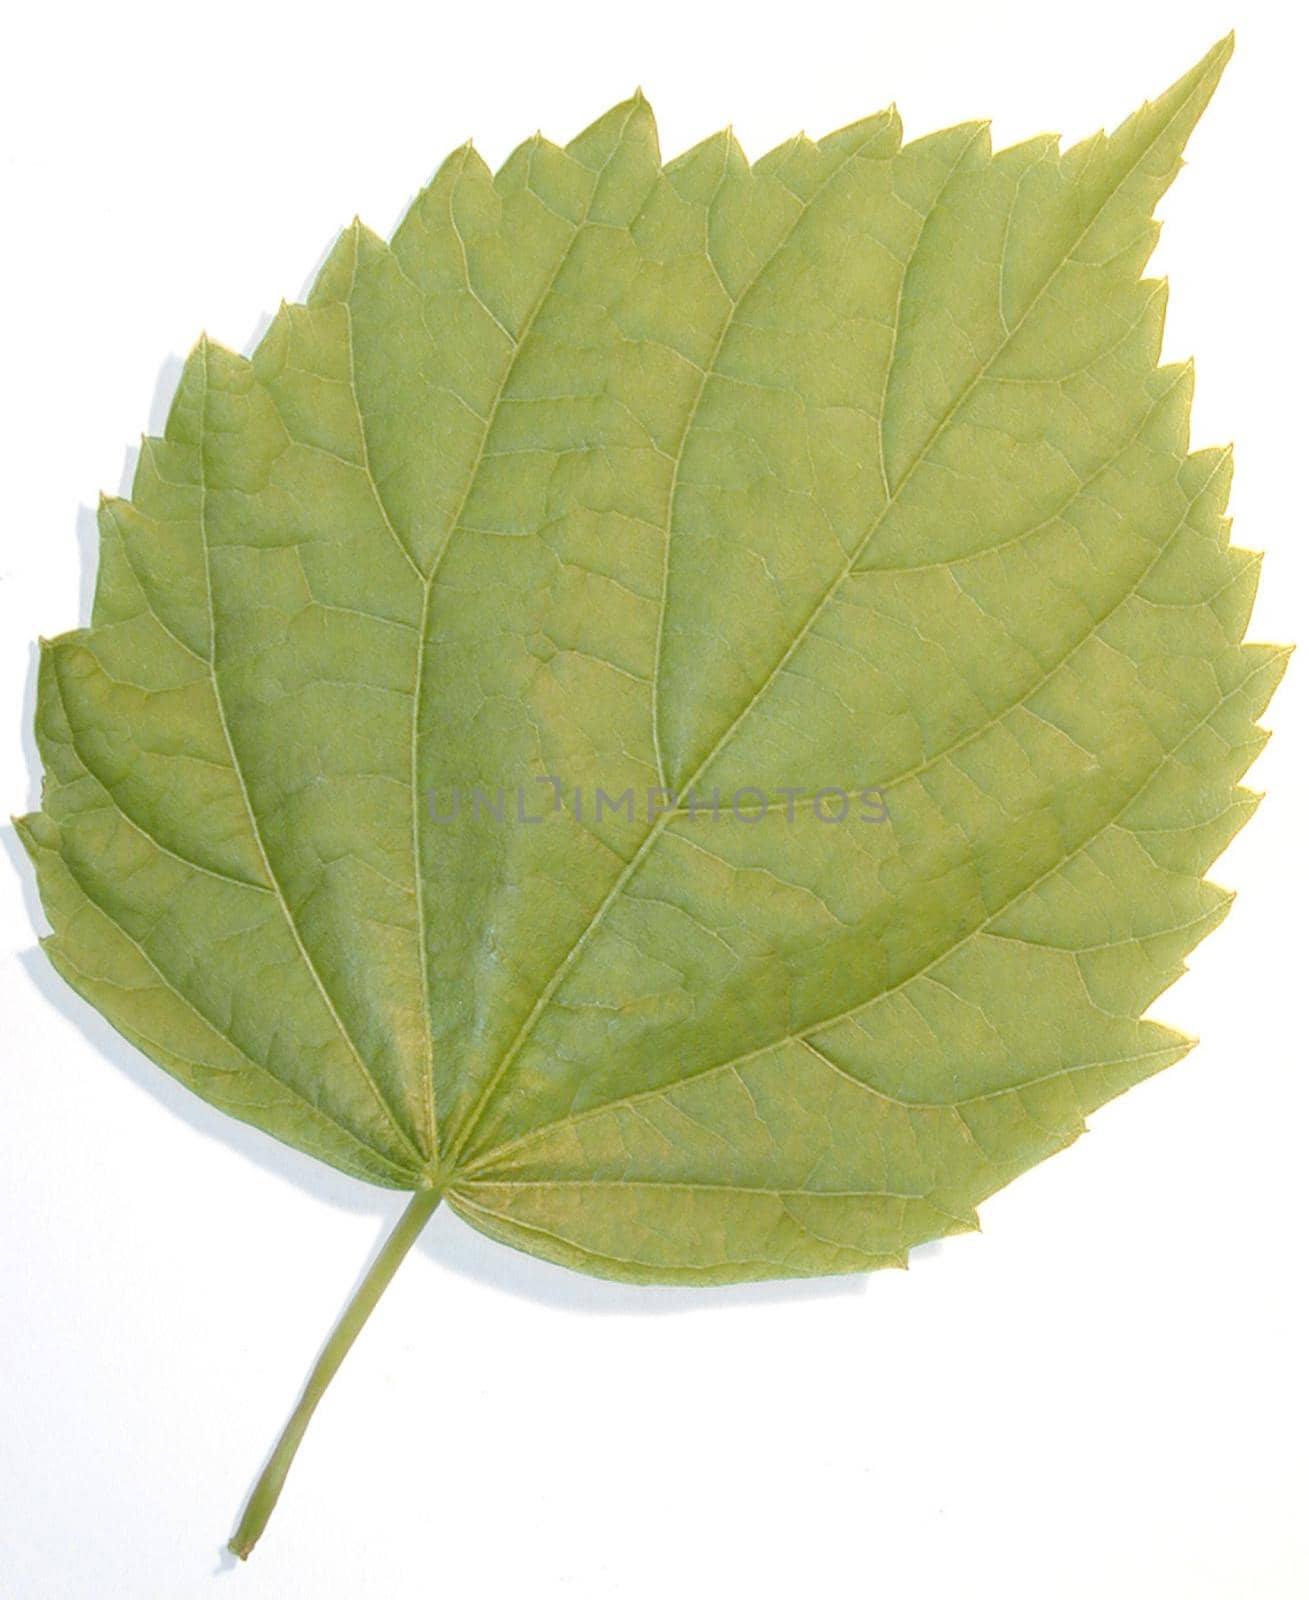 green leaf by sanisra